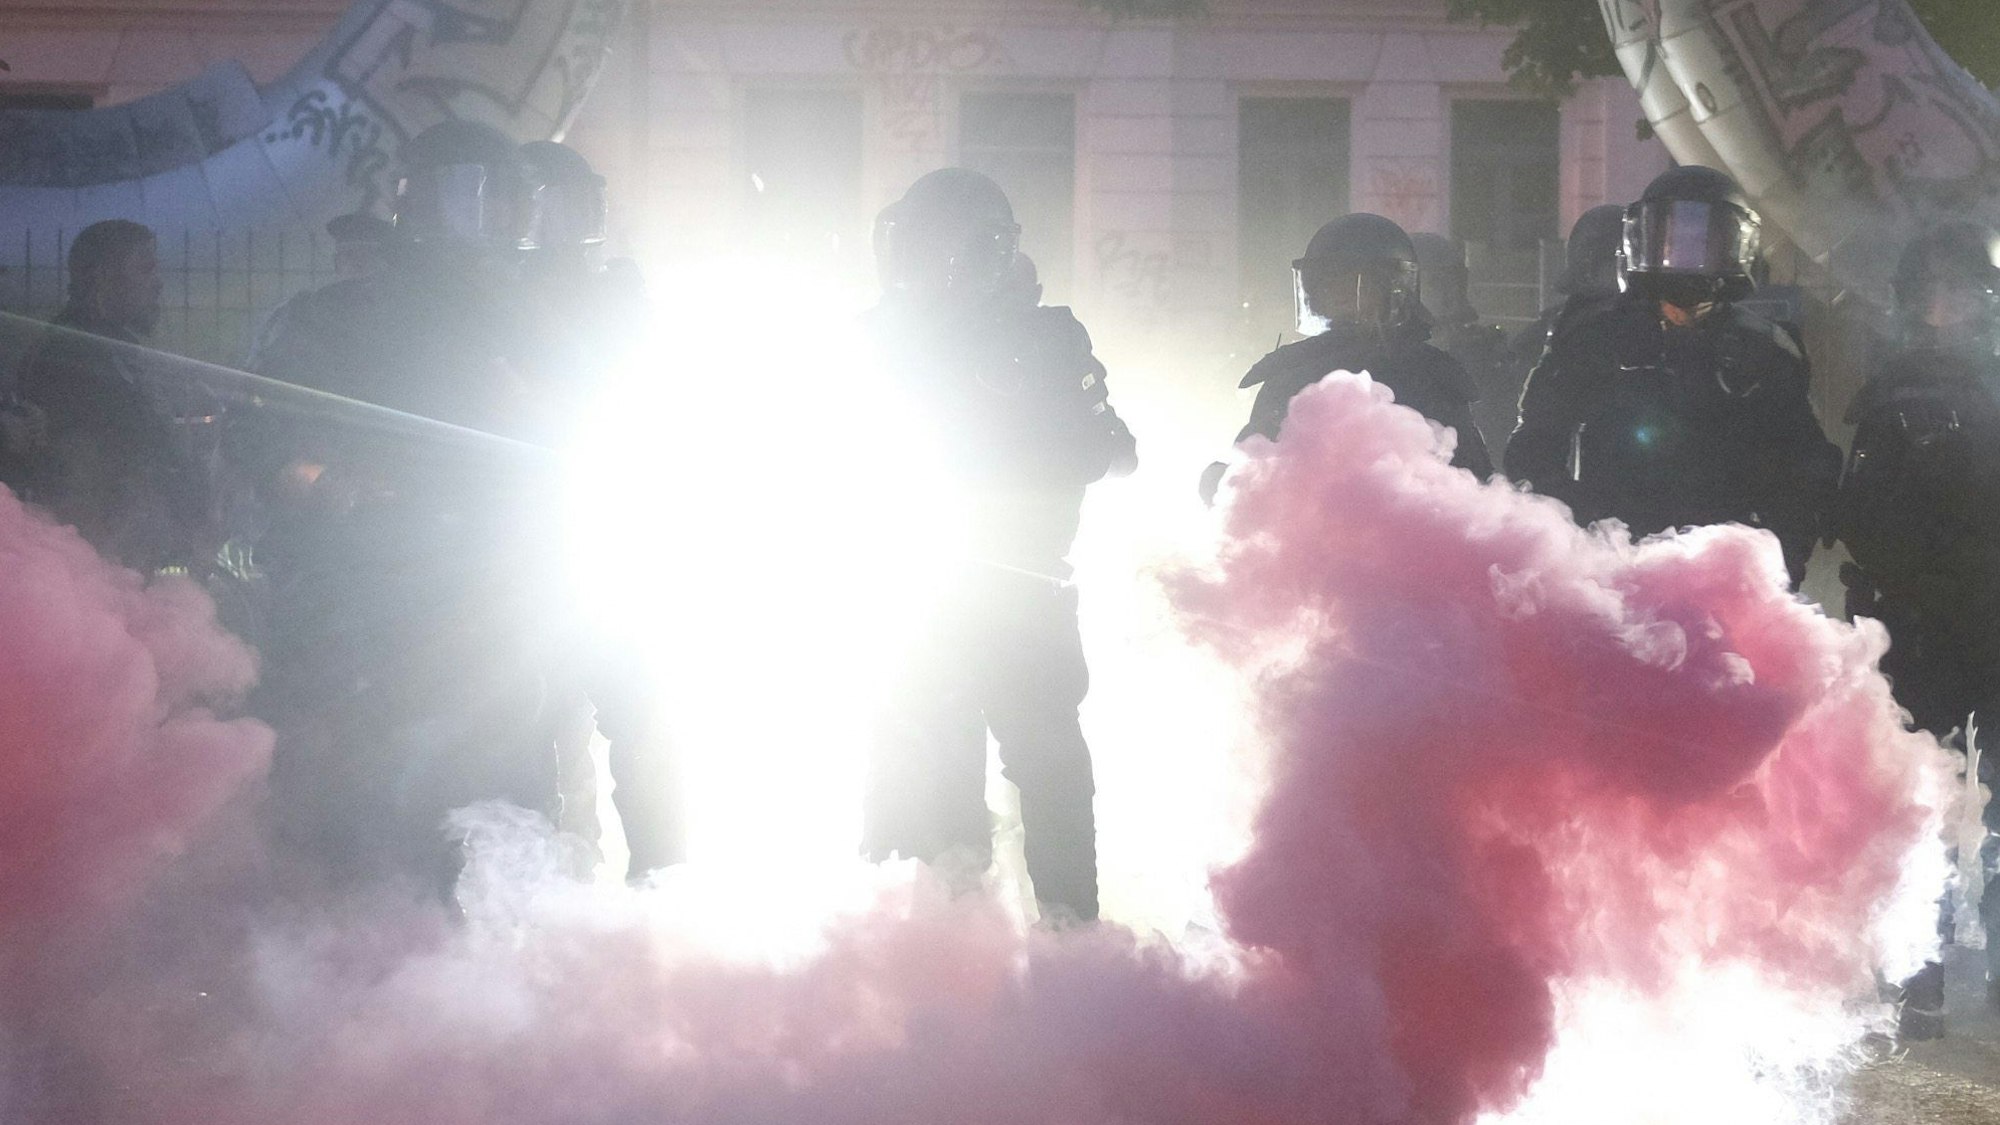 Die Polizei geht in Leipzig gegen Demonstrierende vor, die zu einer Kundgebung zum Urteil gegen die mutmaßliche Linksxtremistin Lina E. aufgerufen hatten. Es wird Pyrotechnik eingesetzt.